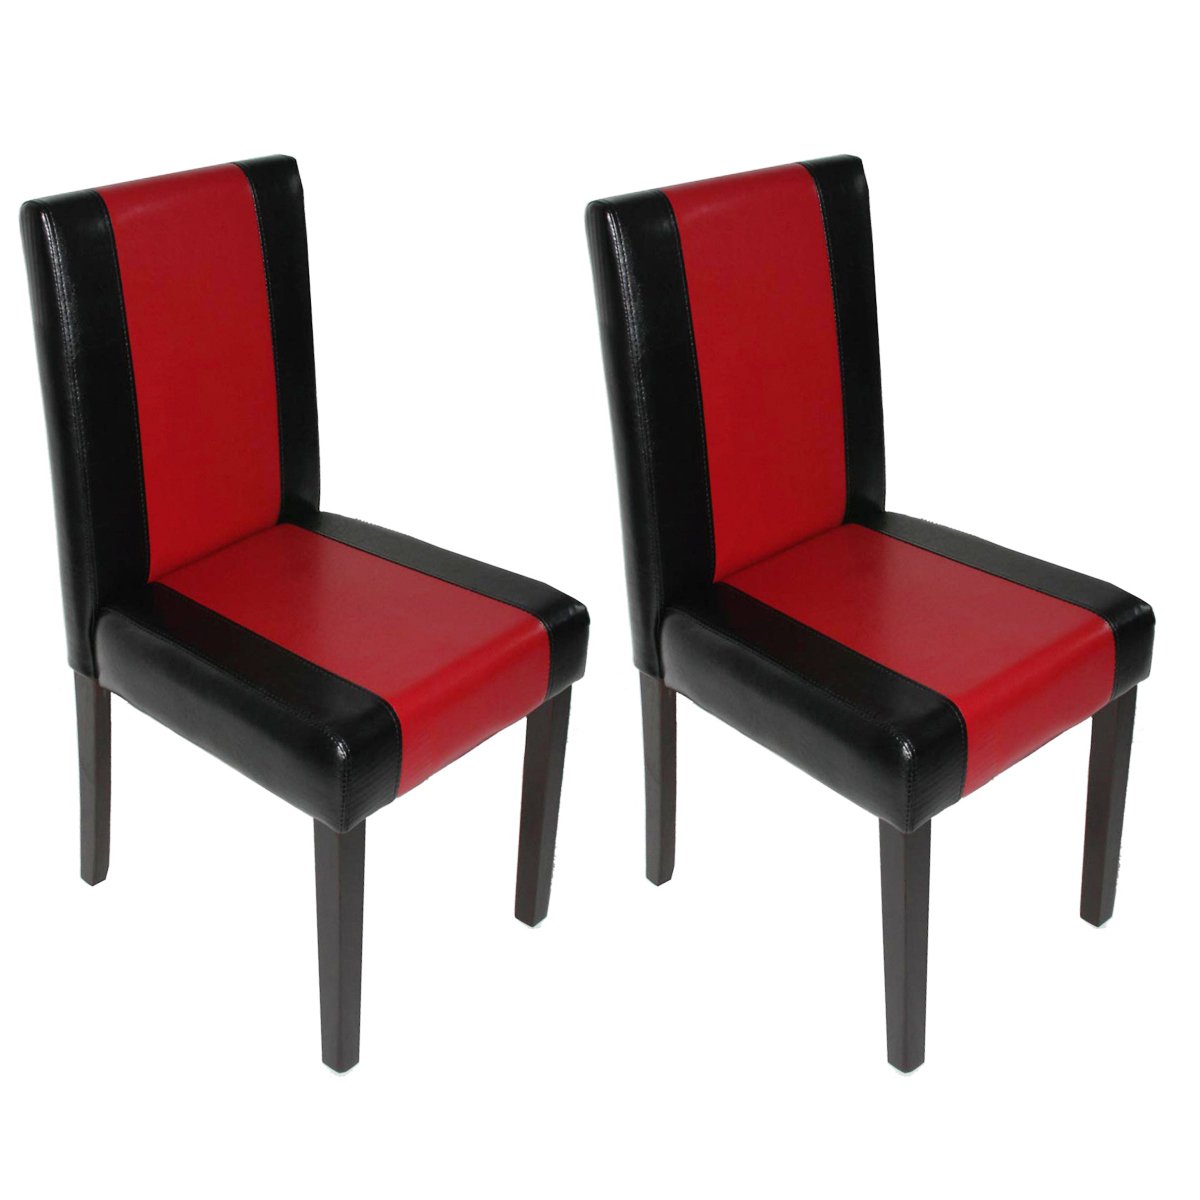 Mendler 2er-Set Esszimmerstuhl Stuhl Küchenstuhl Littau - Kunstleder, schwarz-rot, dunkle Beine